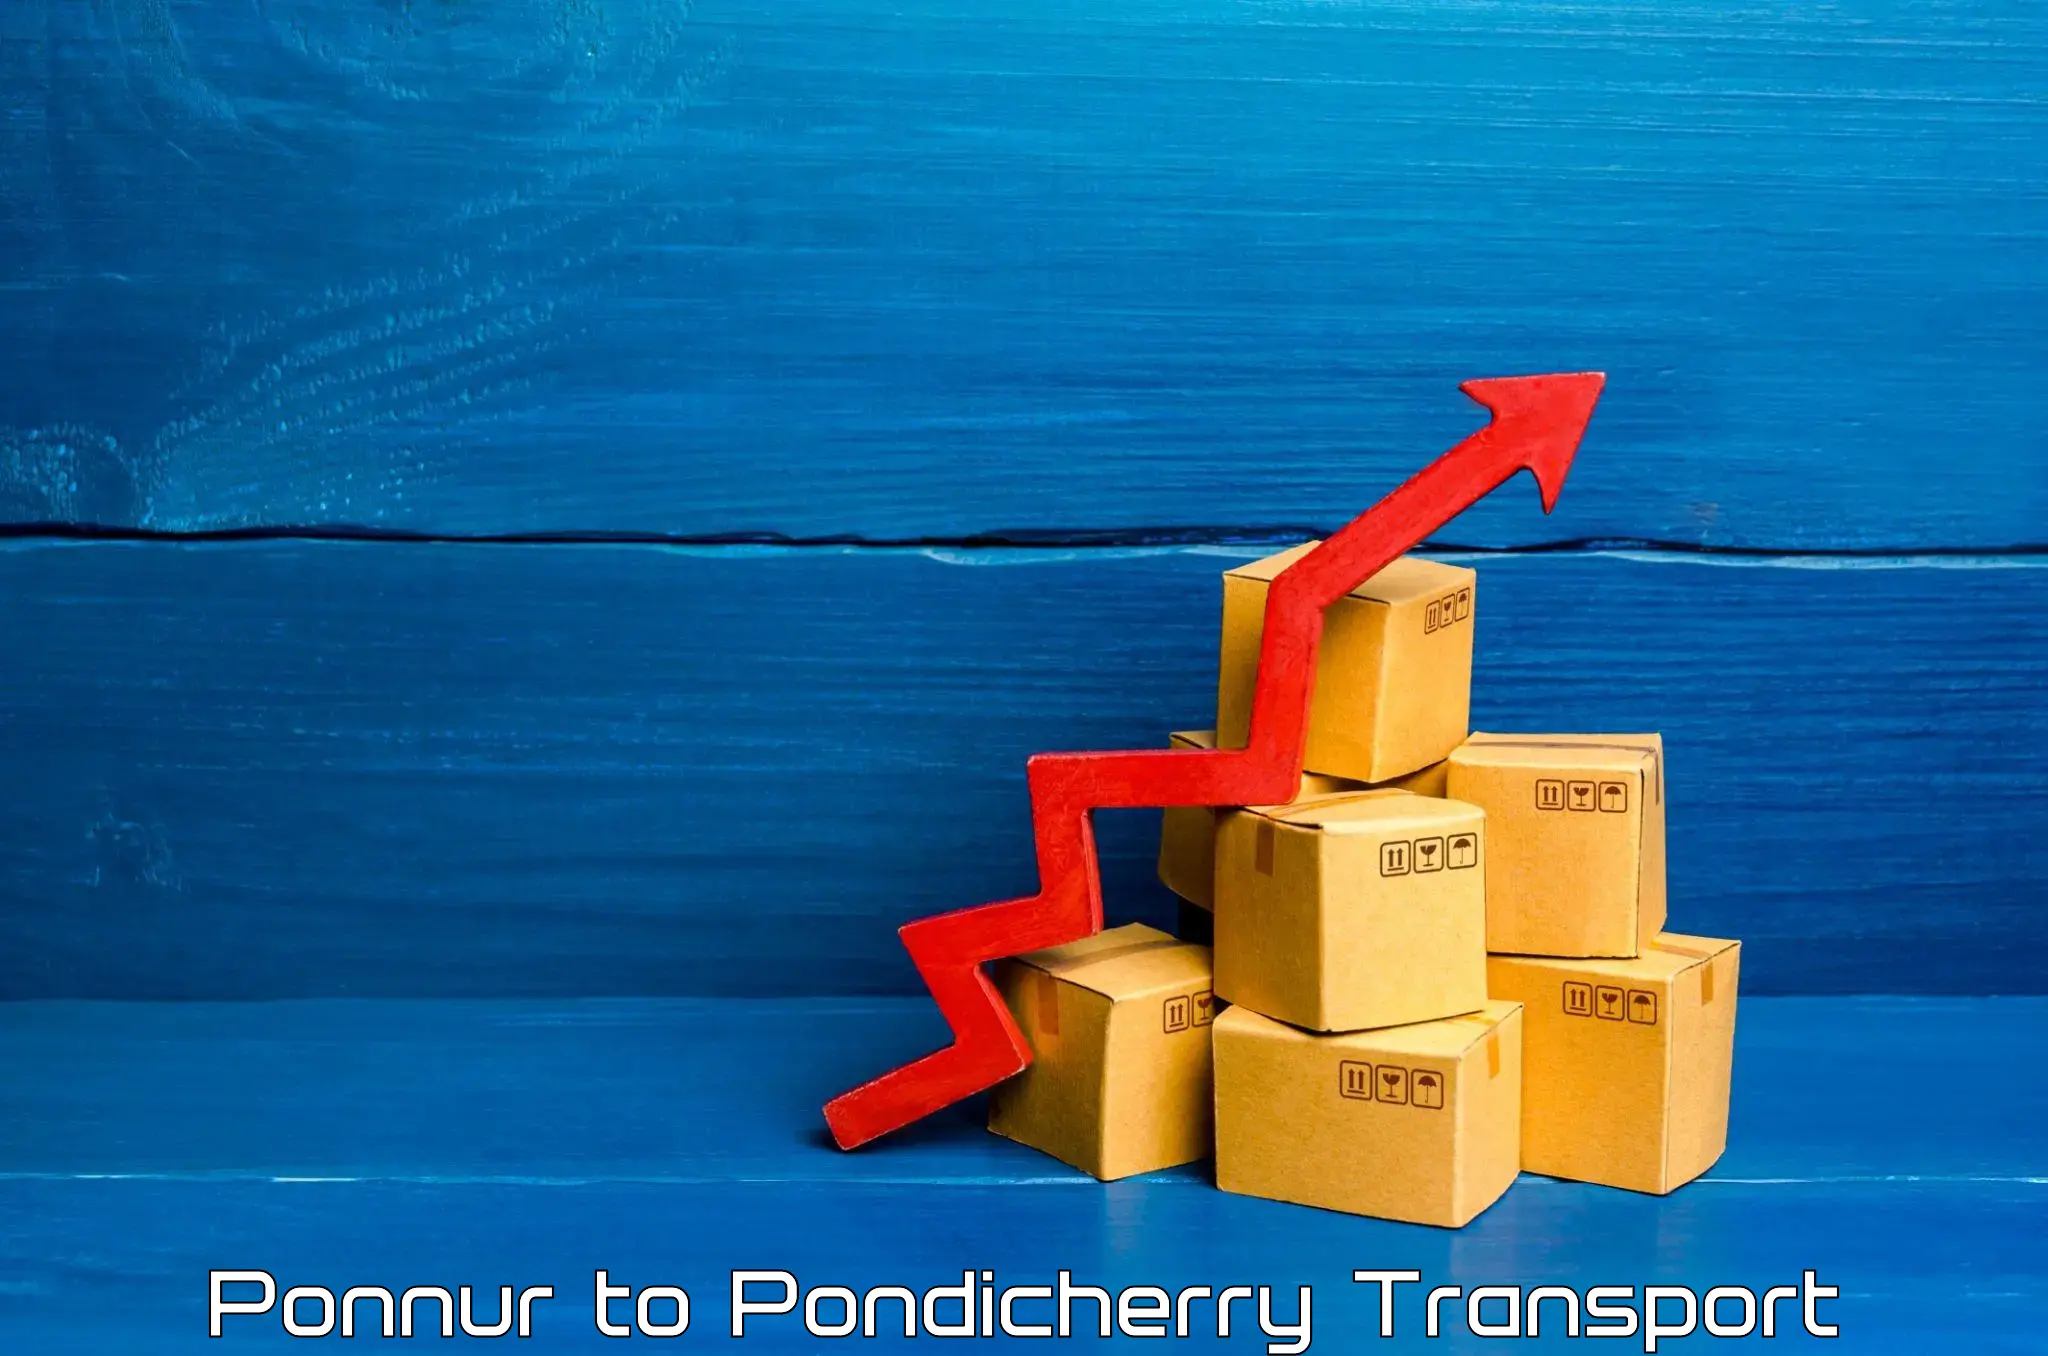 Nationwide transport services Ponnur to Pondicherry